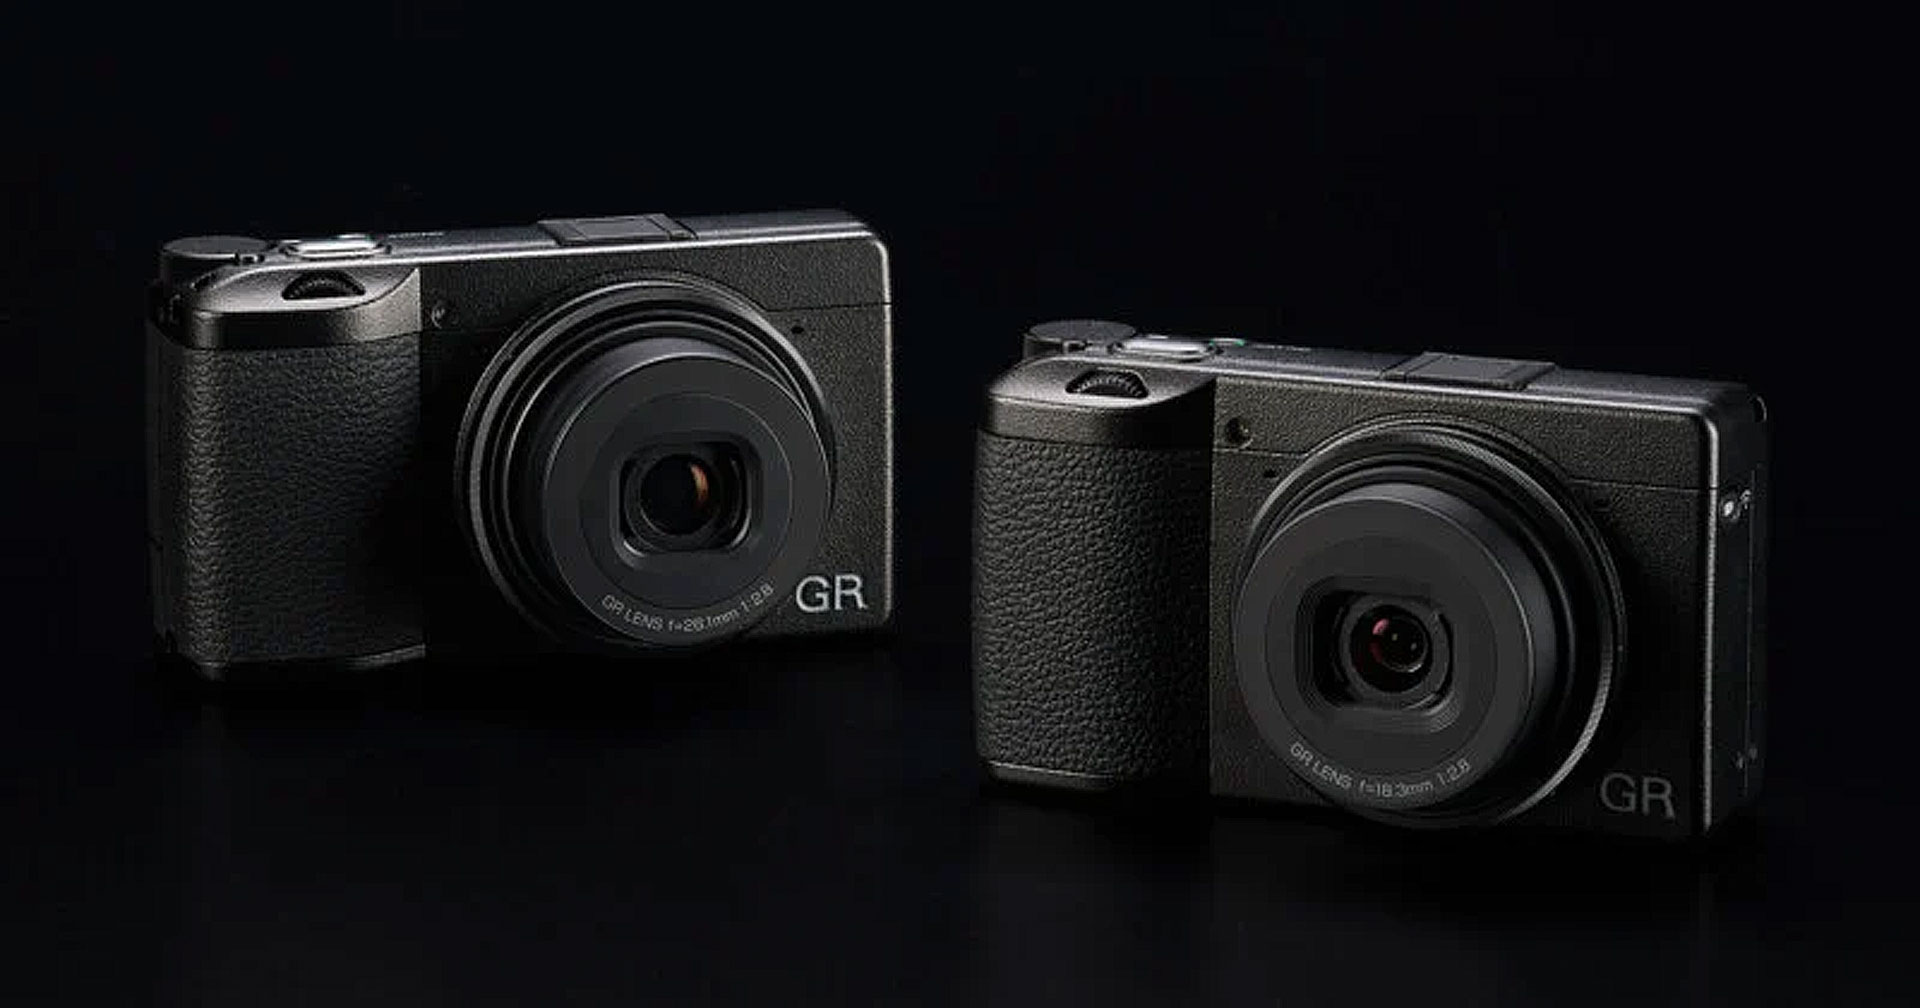 เปิดตัว Ricoh GRIII HDF และ GRIIIx HDF กล้อง Compact ตัวเล็ก พร้อมฟิลเตอร์ภาพนุ่มฟุ้งชวนฝัน